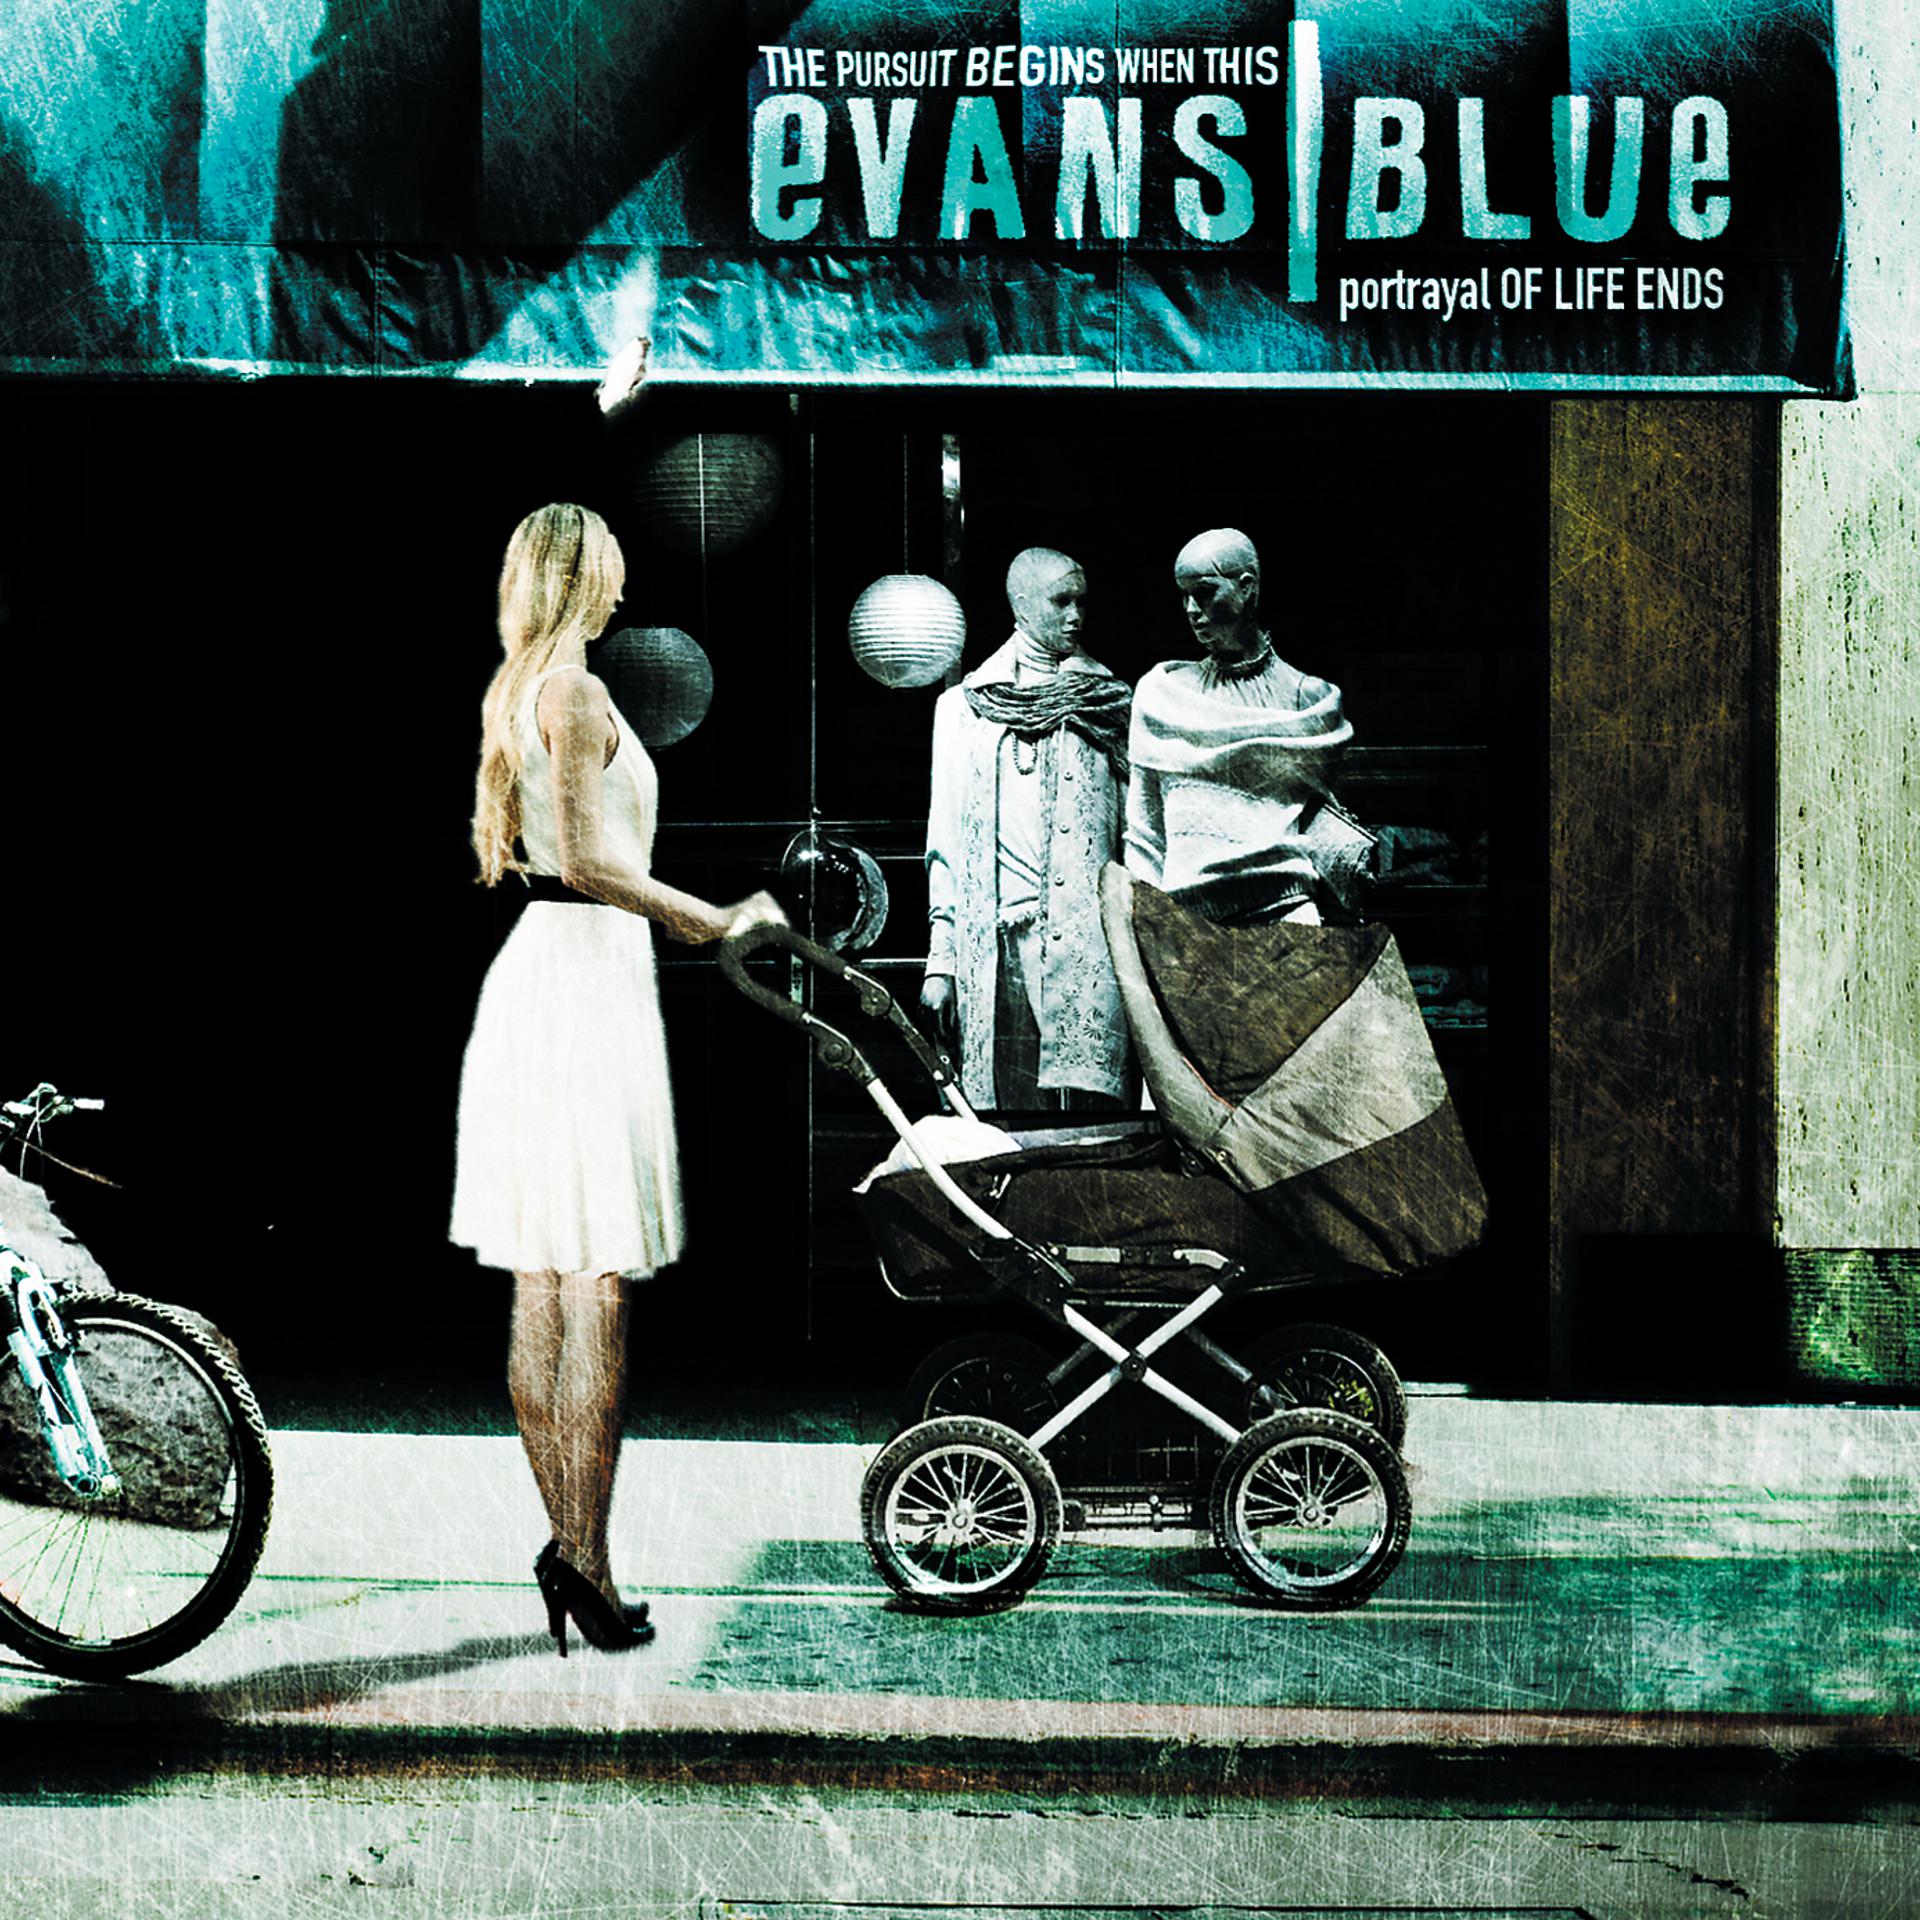 Evans Blue - the Pursuit begins when this portrayal of Life ends (2007). Evans Blue. Evans Blue 2006. Portrayal группа.